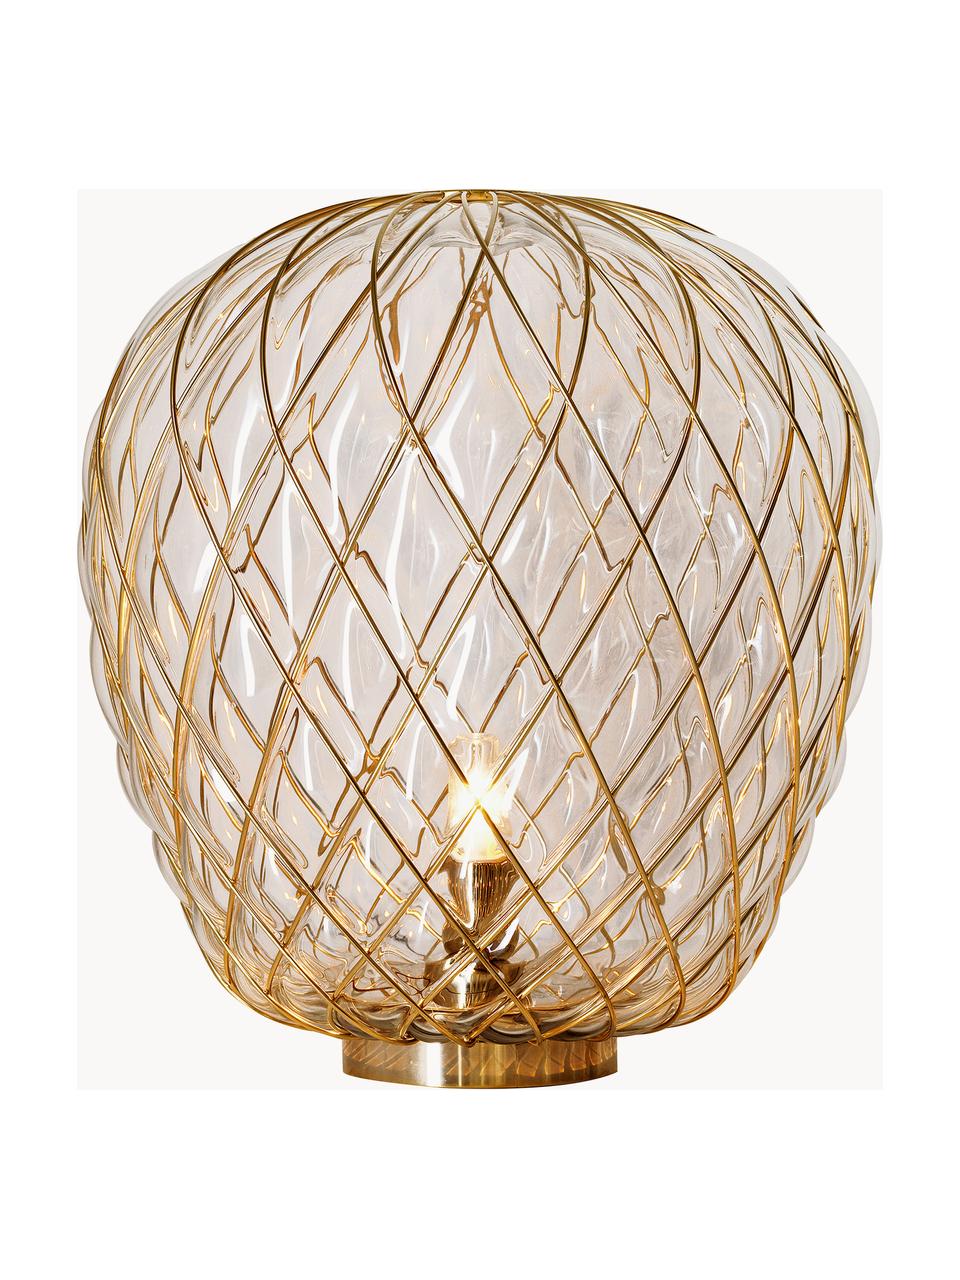 Grosse Tischlampe Pinecone, handgefertigt, Lampenschirm: Glas, Metall, galvanisier, Transparent, Goldfarben, Ø 50 x H 52 cm